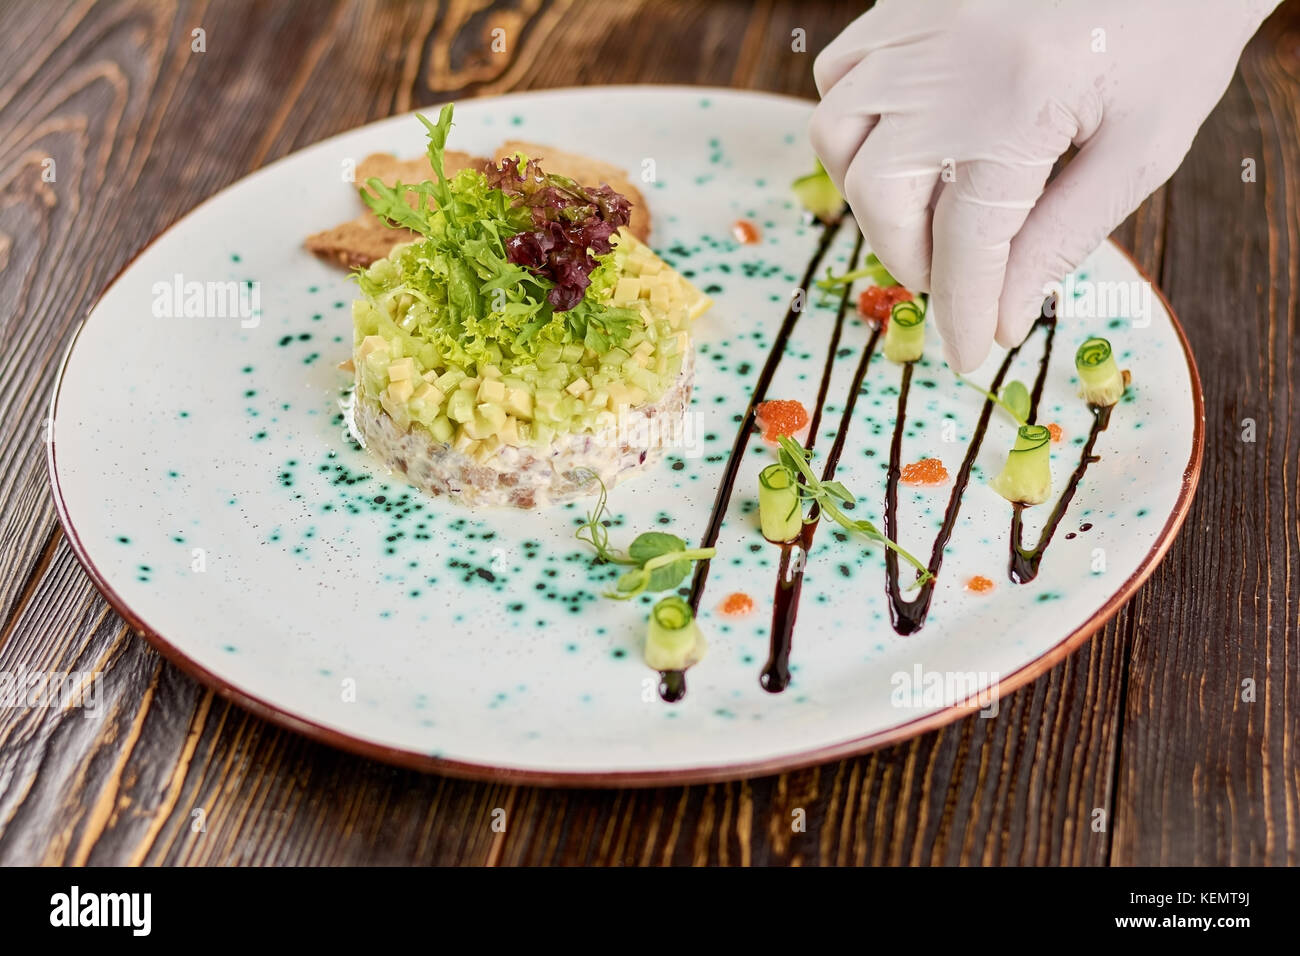 Koch hand Dekoration Platte mit Salat. Kochen Vorbereitung leckeren Salat  im Restaurant. Wunderschön serviert Gericht Stockfotografie - Alamy